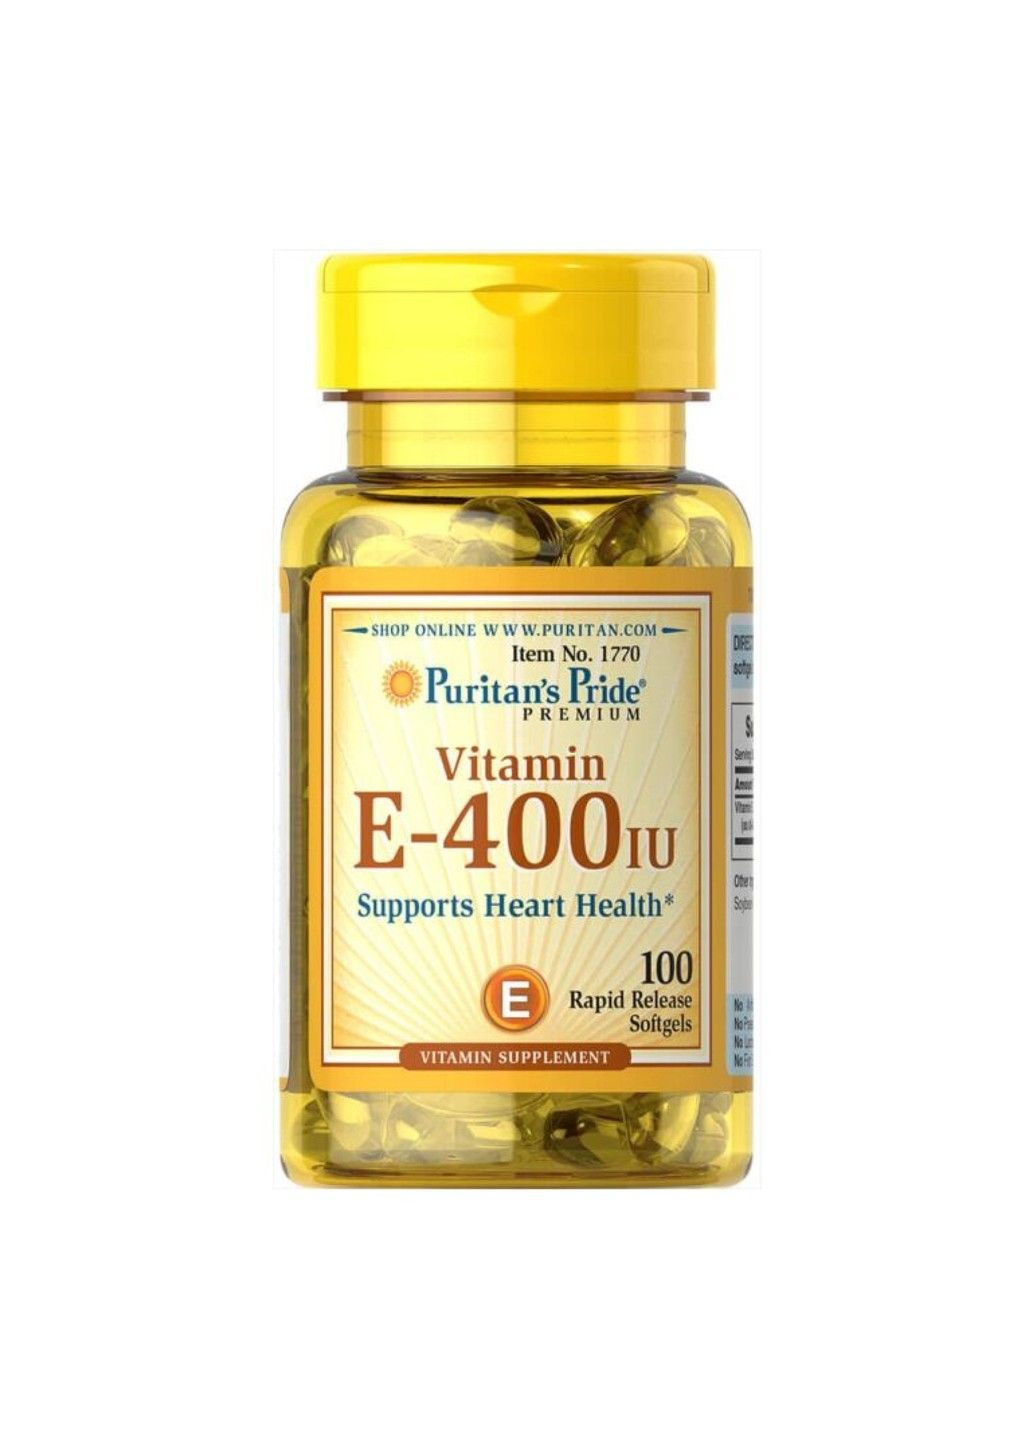 Вітамін Е для Підтримки Здоров'я Серця Vitamin E-400 IU - 100 софтгель Puritans Pride (293516658)